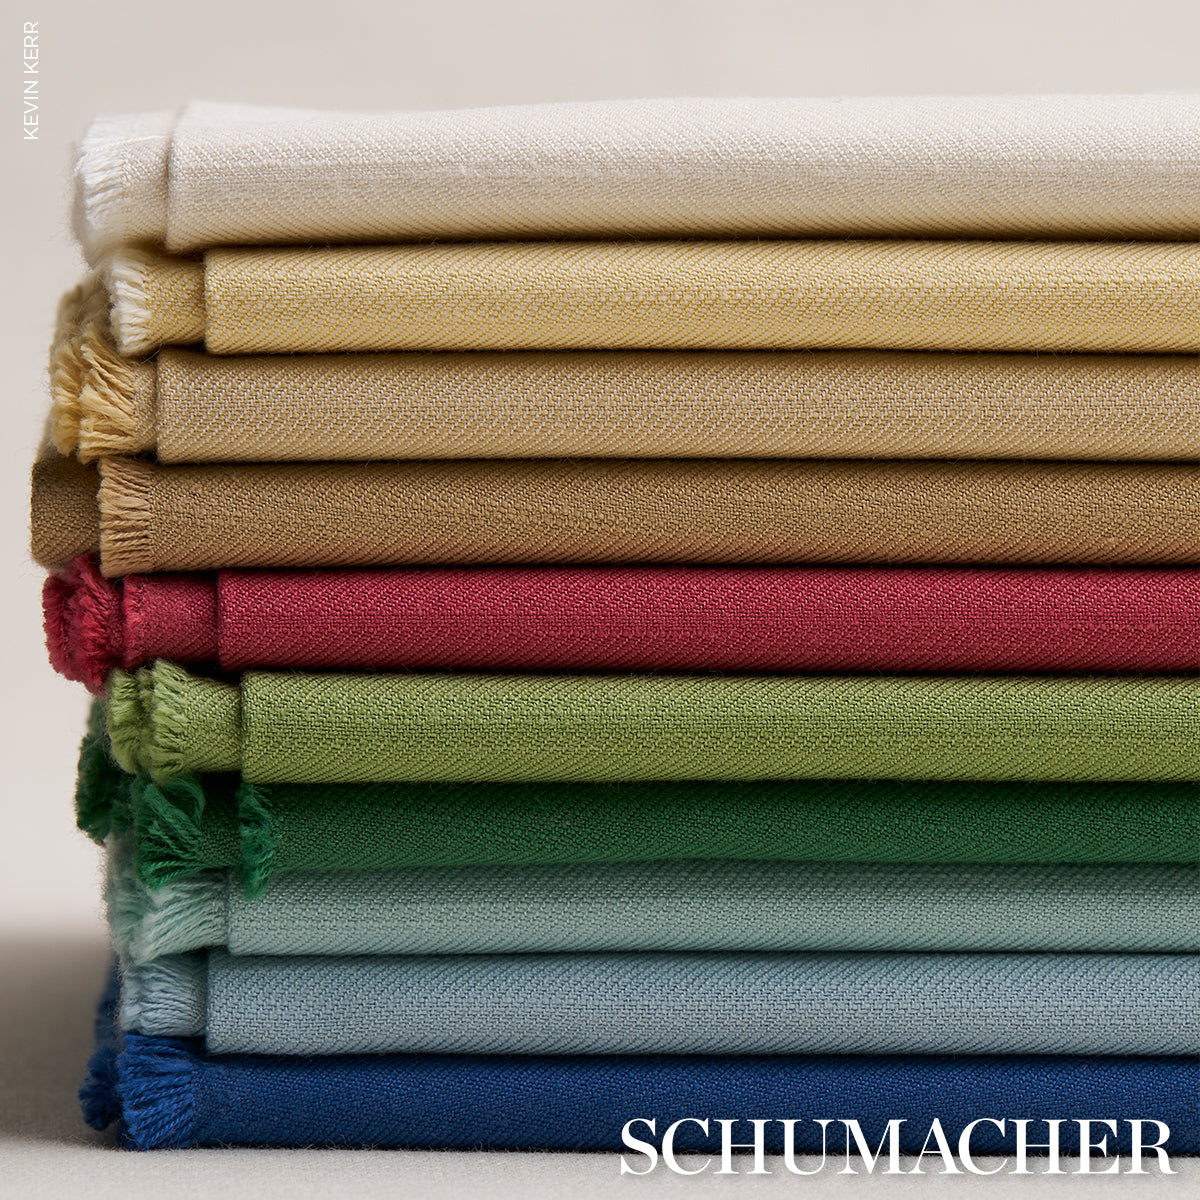 Purchase 83748 | Judy Texture, Light Neutral - Schumacher Fabric